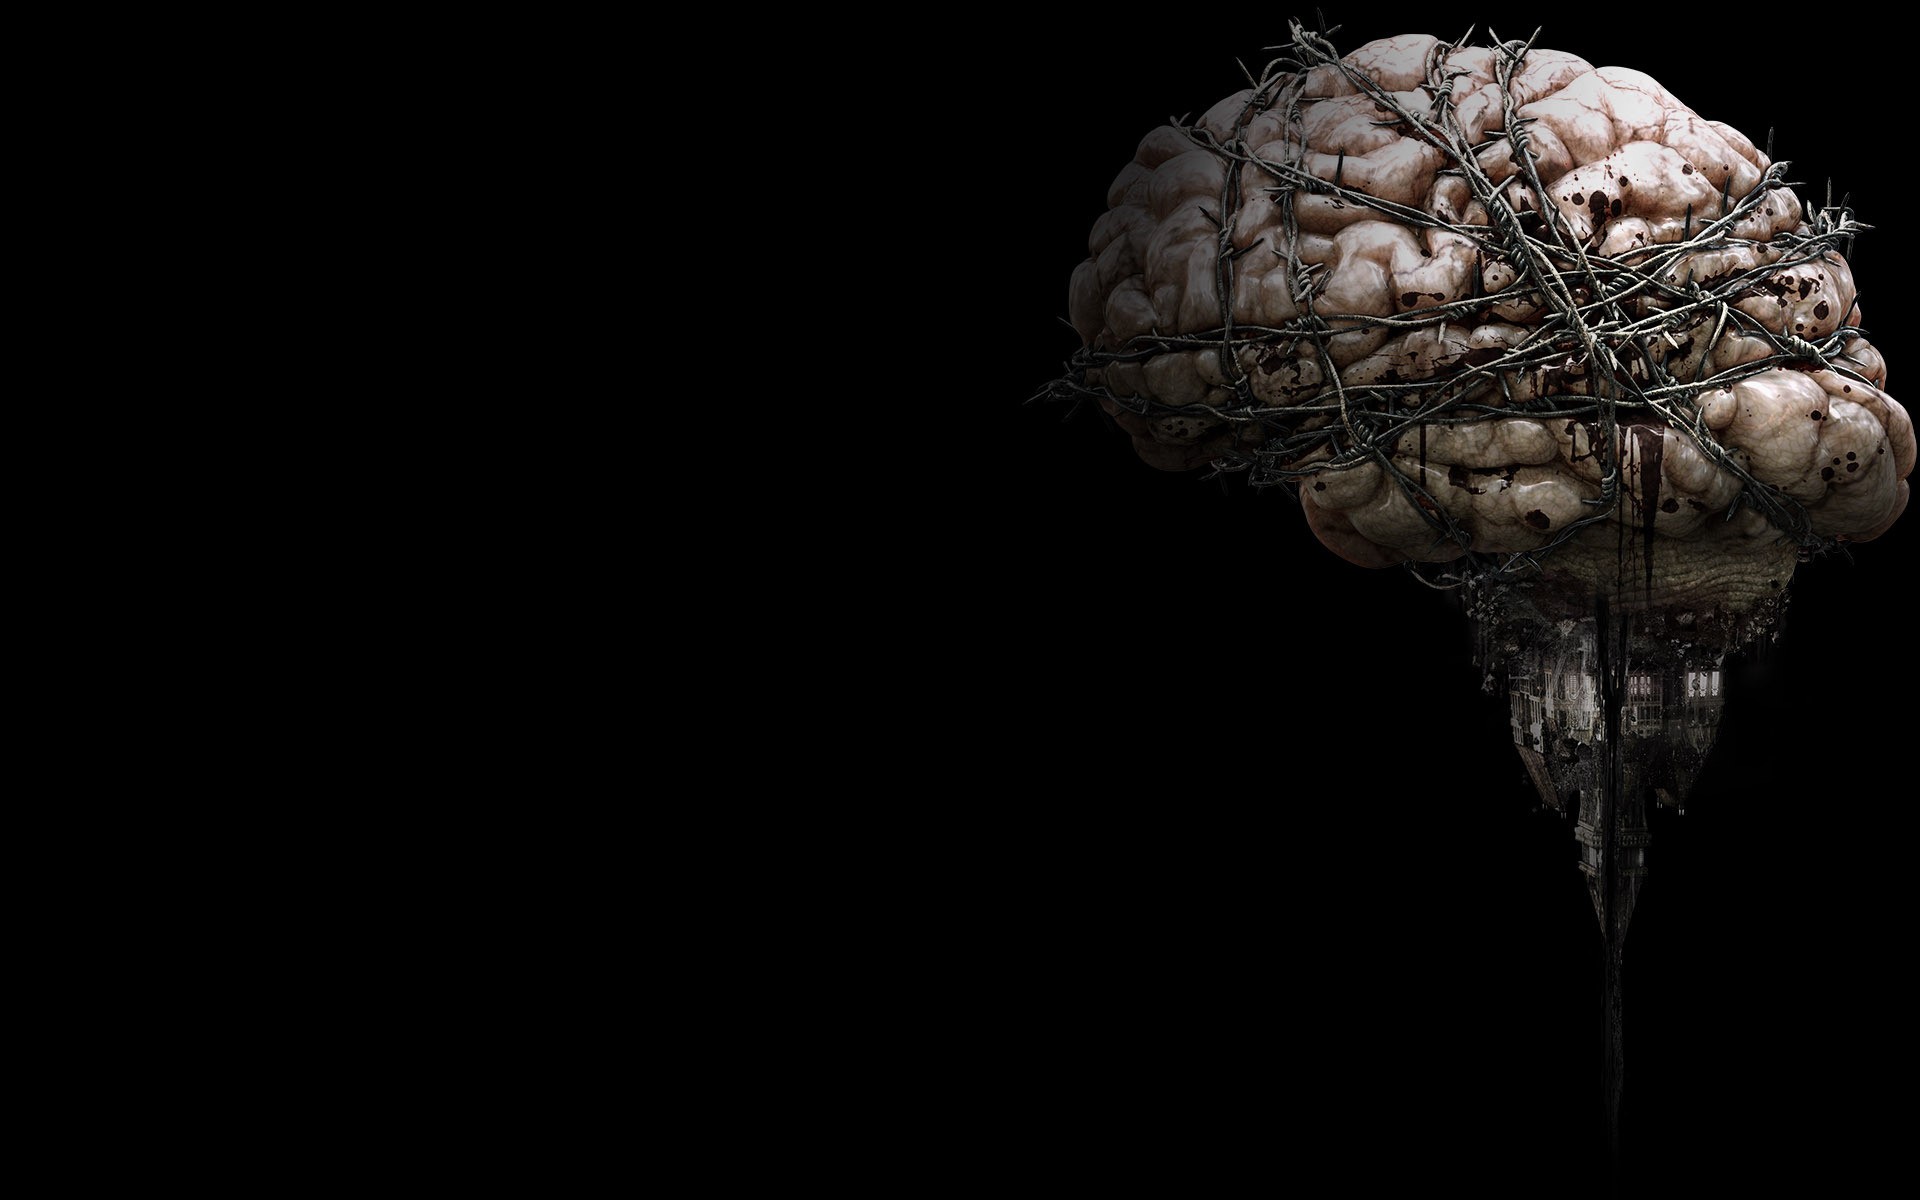 뇌 벽지,뇌,머리,뇌,정물 사진,사진술